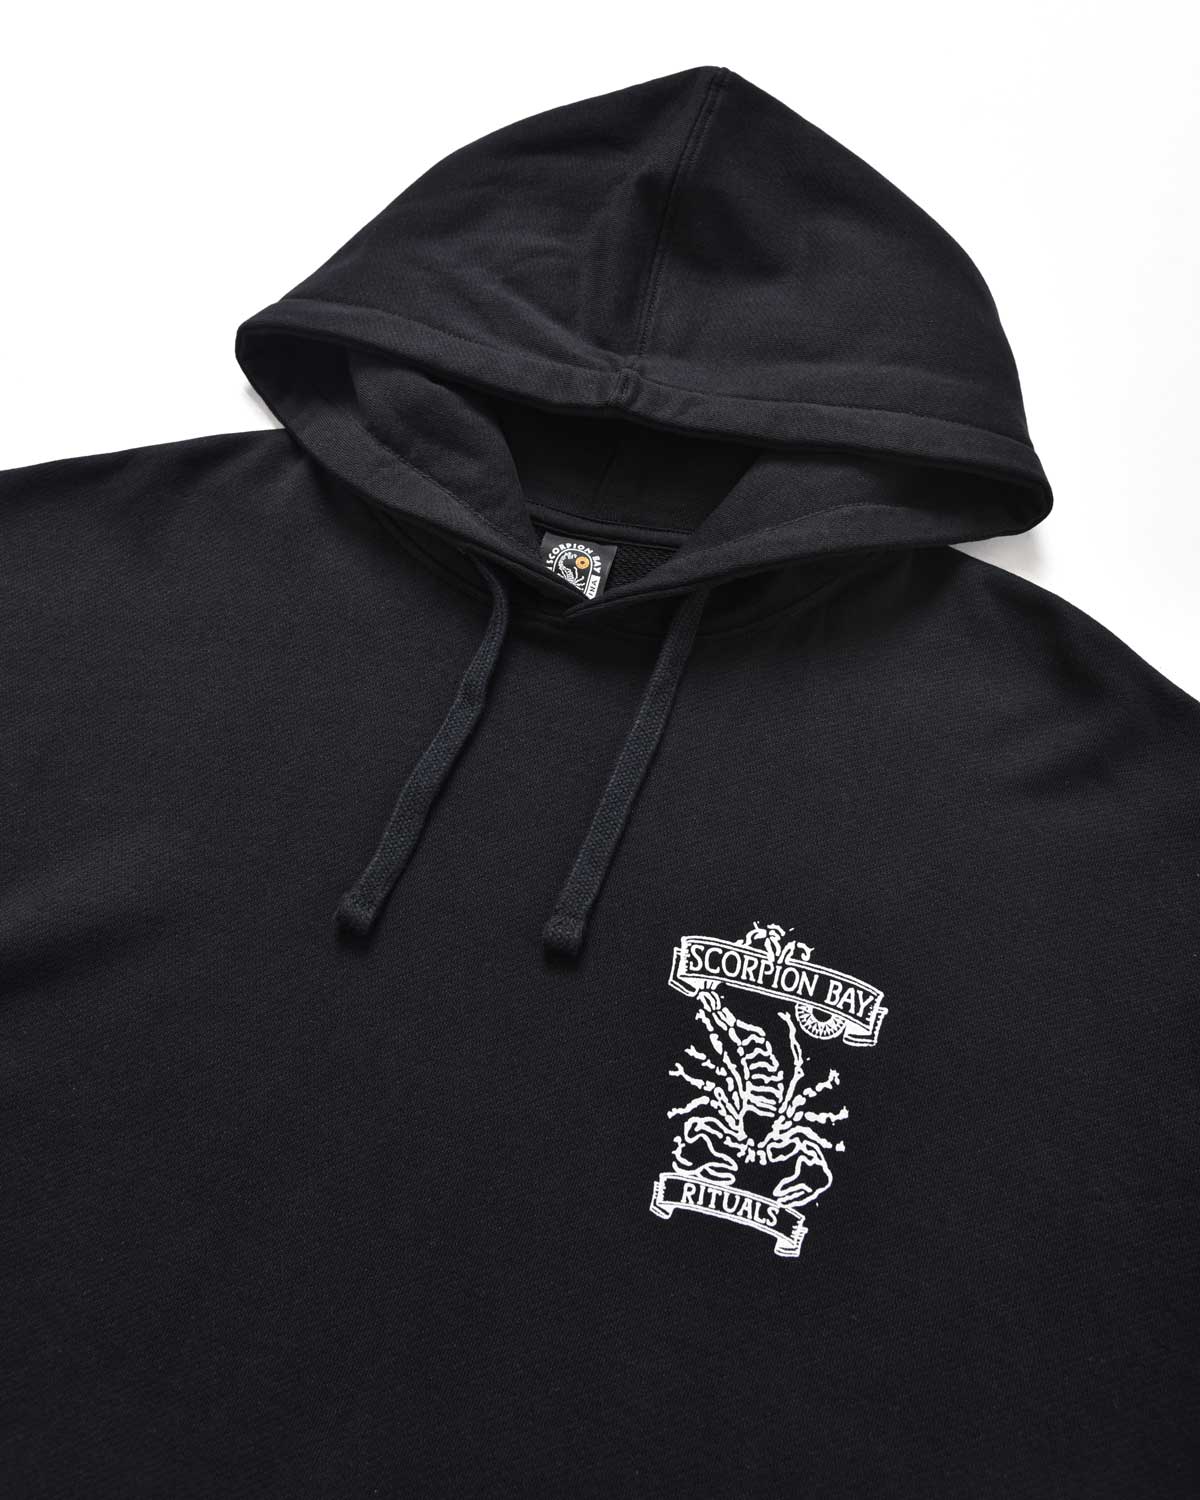 Man | Ritual Og "Thunder Bay" Black Sweatshirt In 100% Cotton